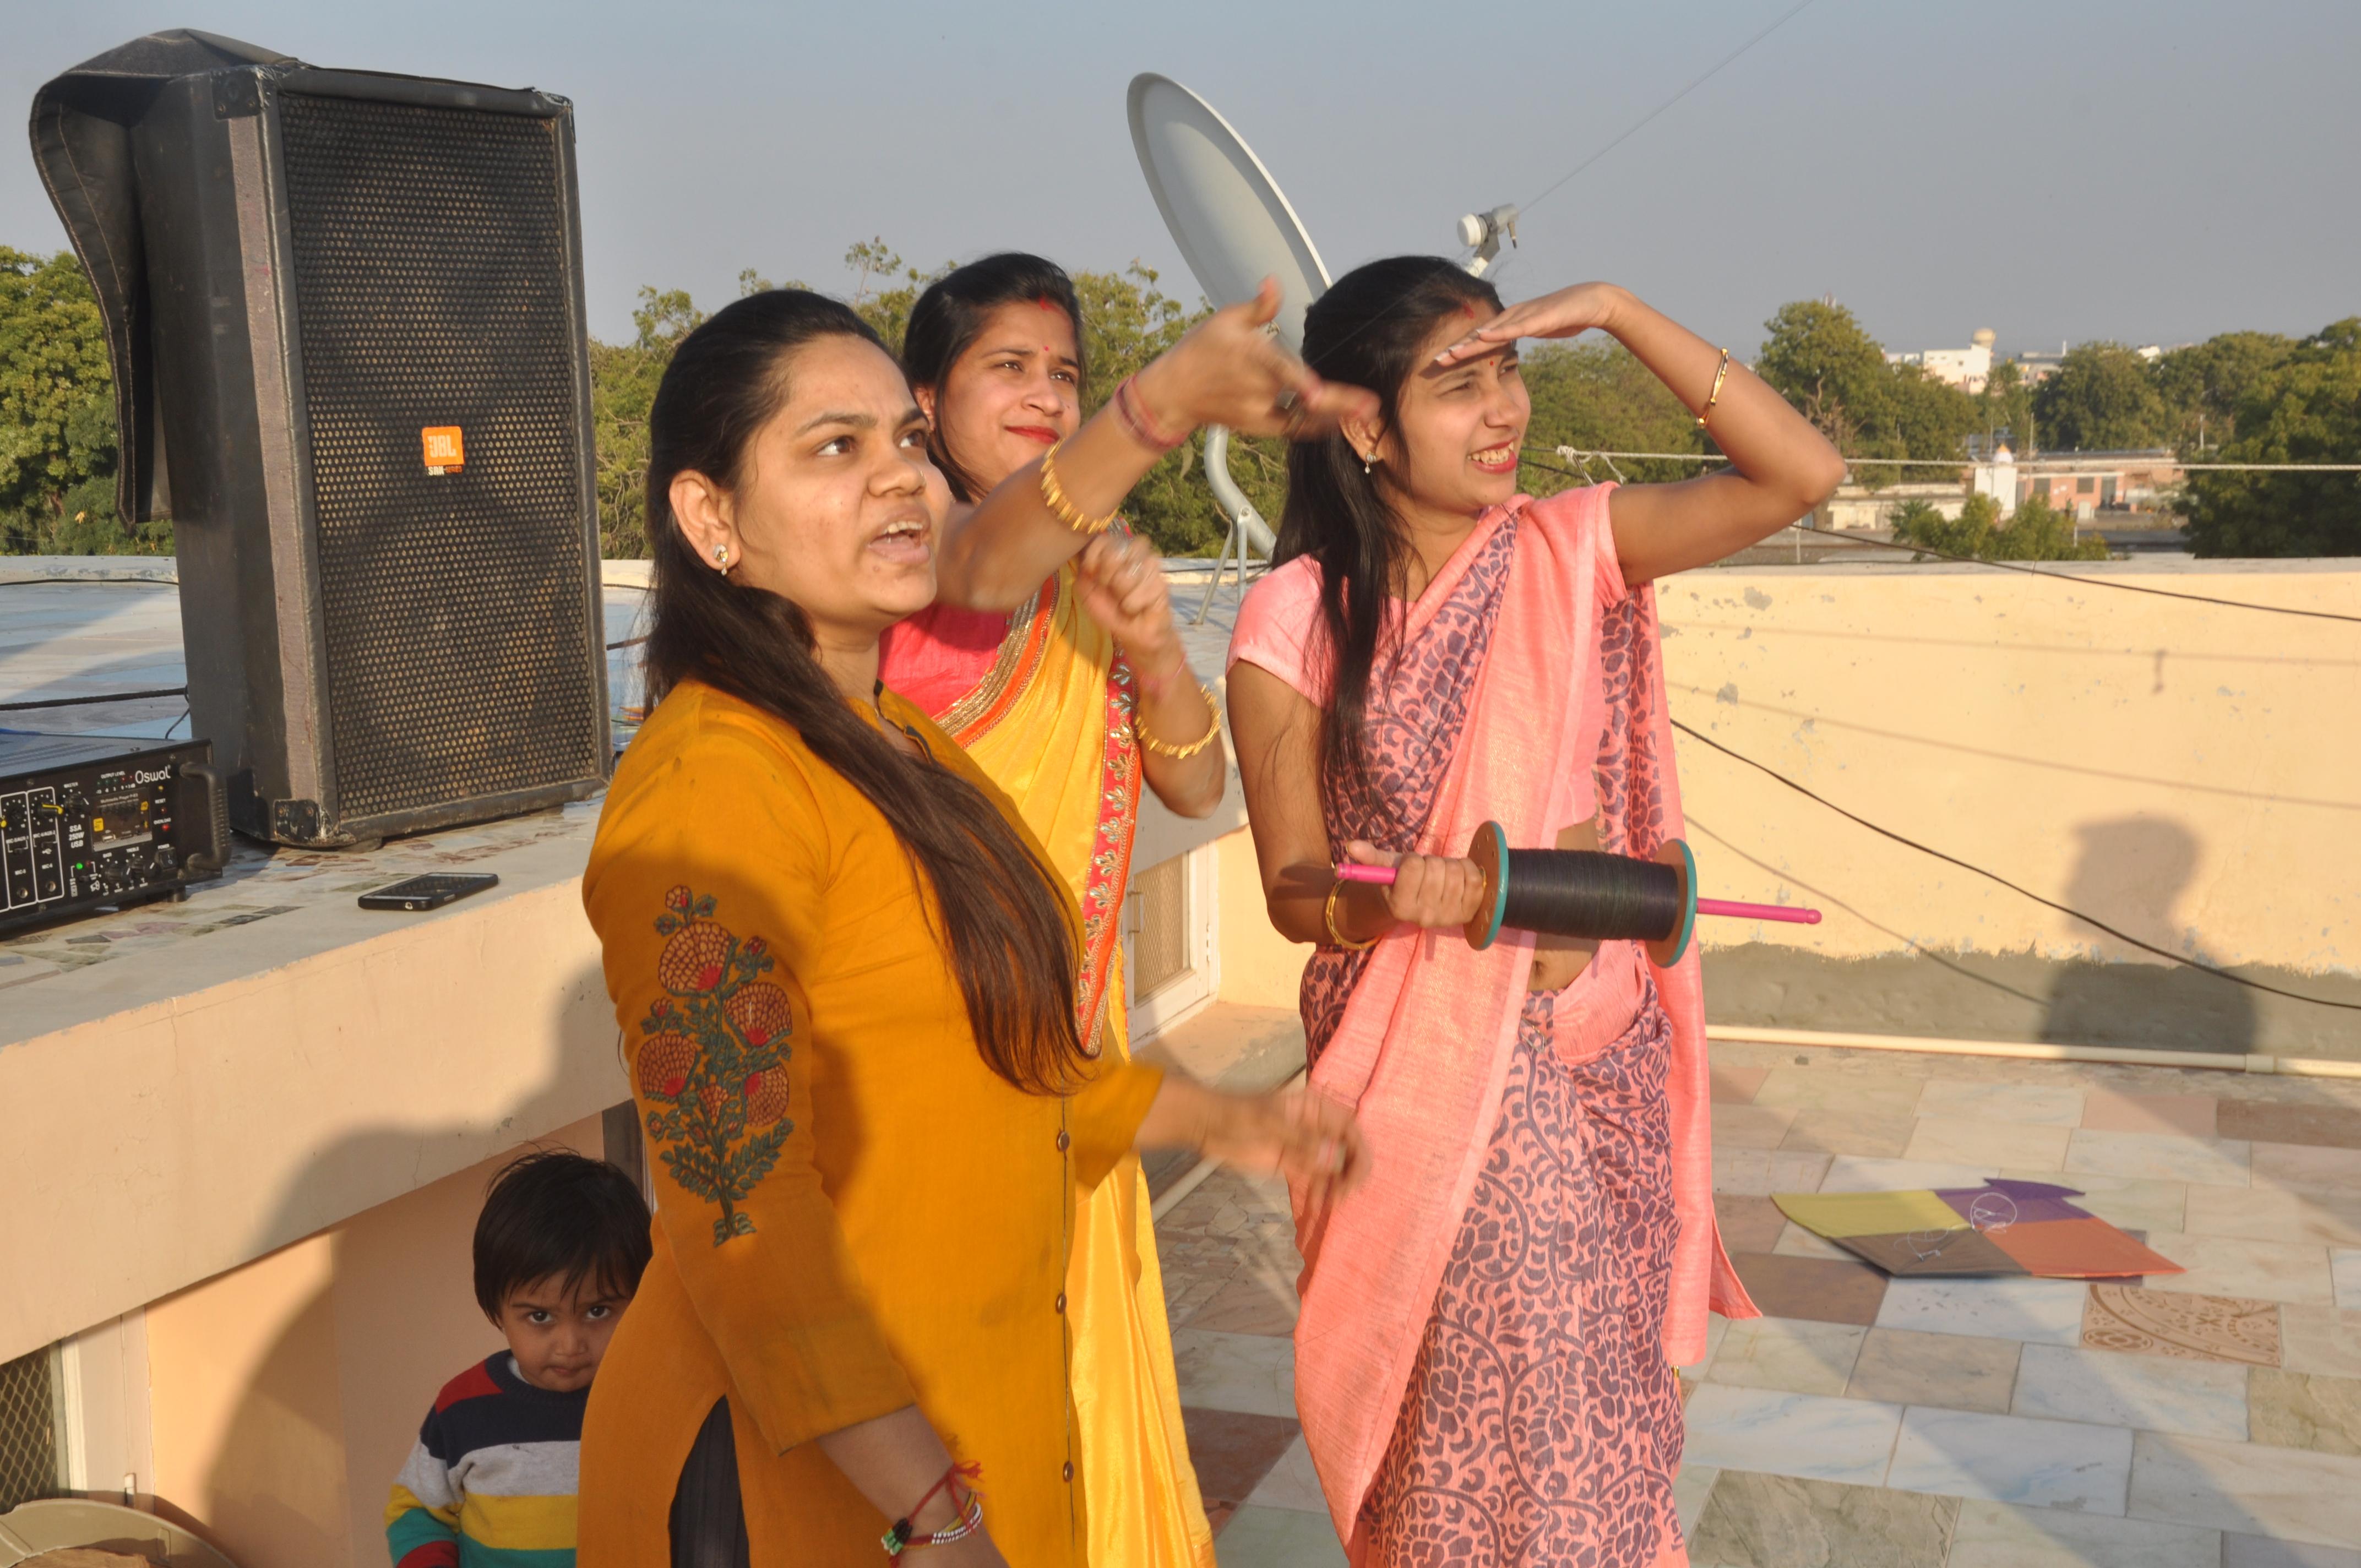 kite festival in jaipur